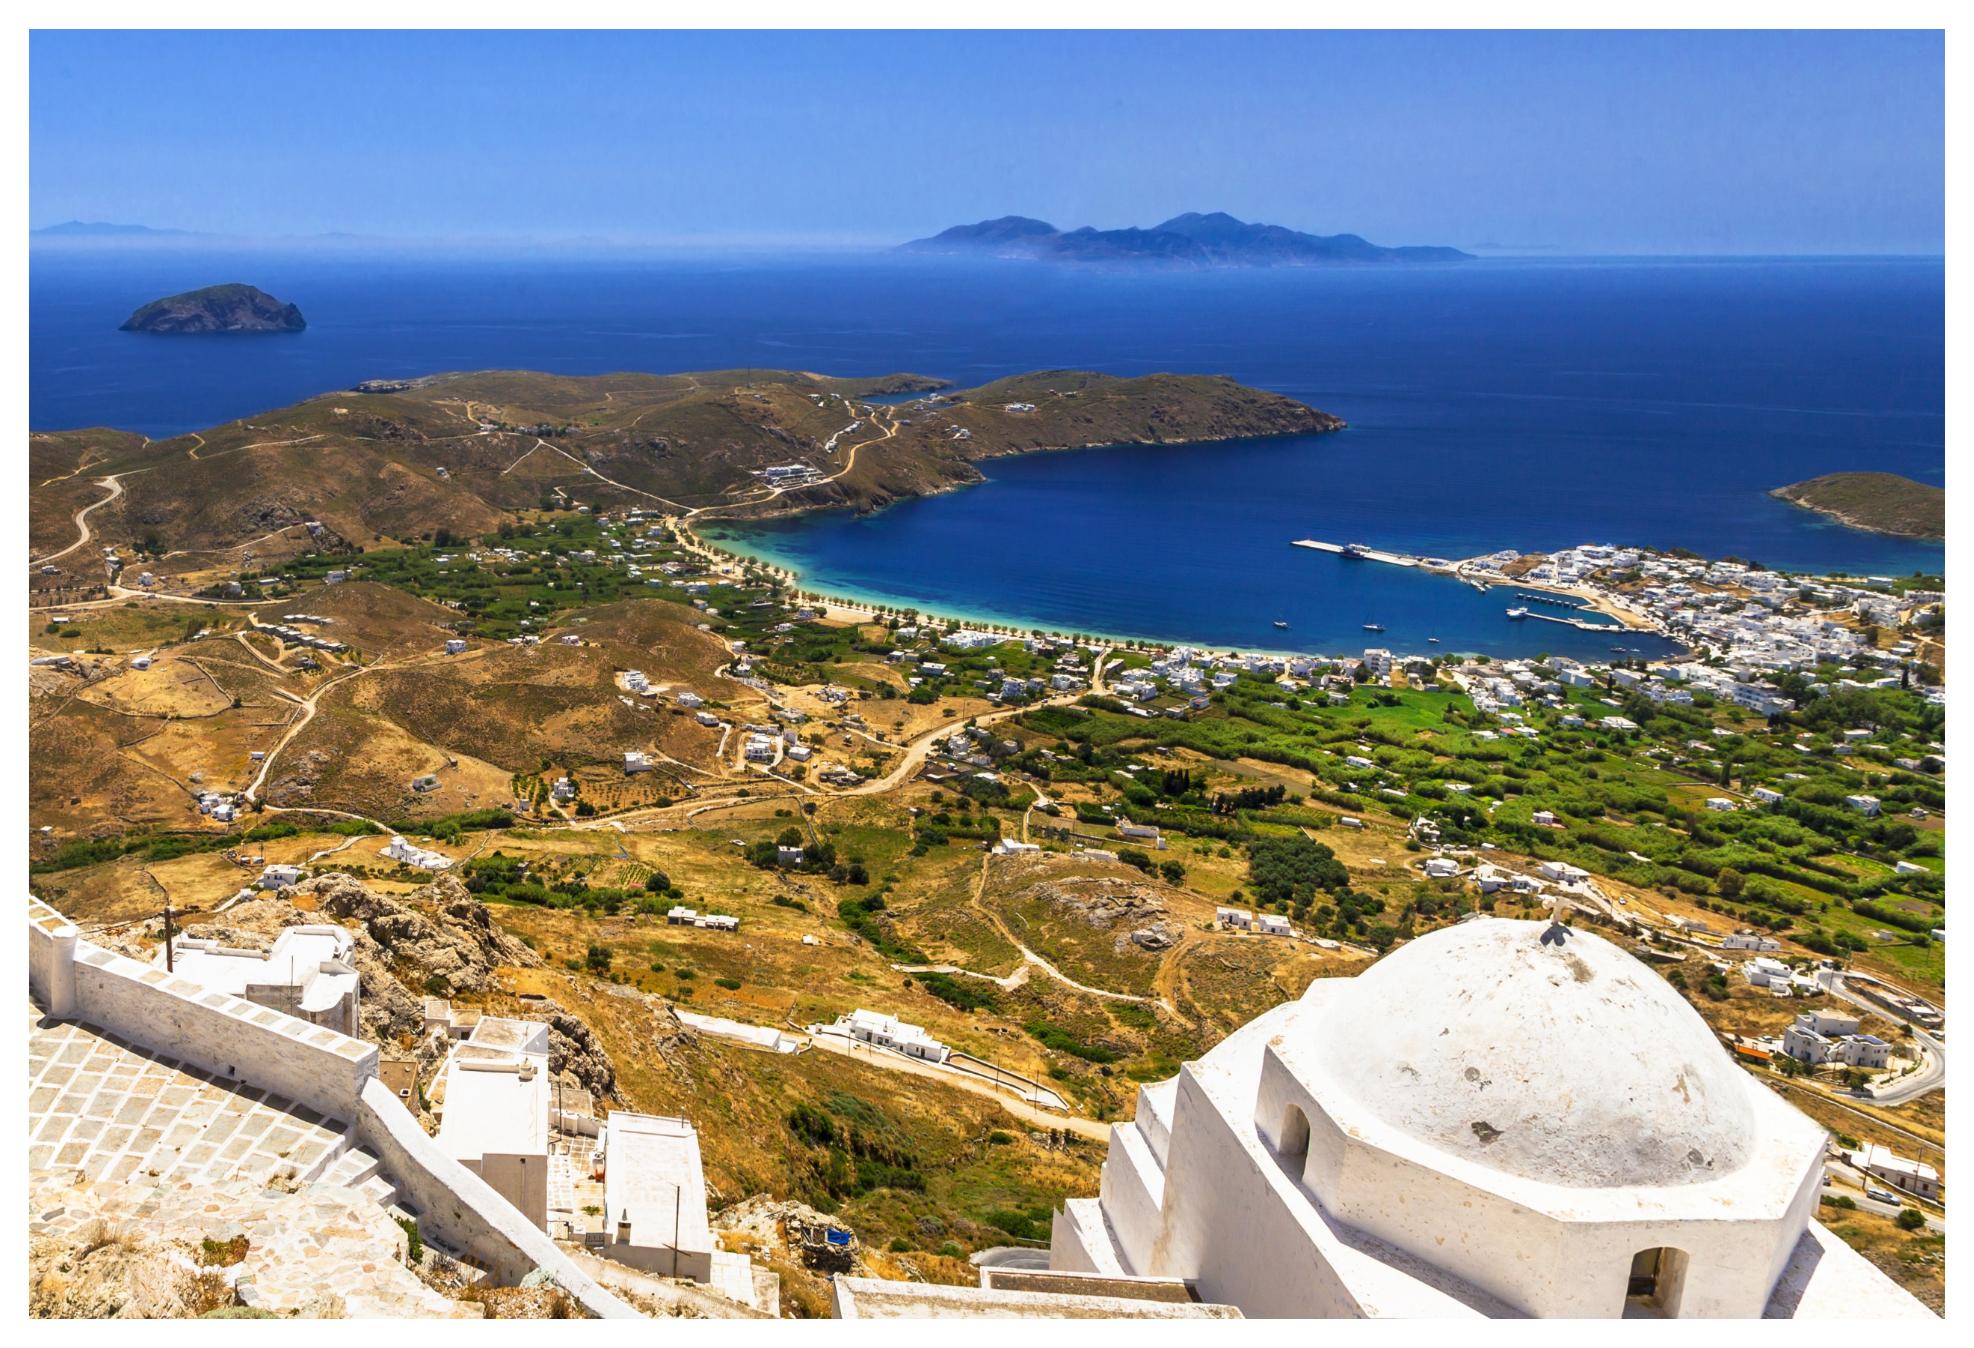 Τα 6 ελληνικά νησιά για οικονομικές διακοπές φέτος το καλοκαίρι